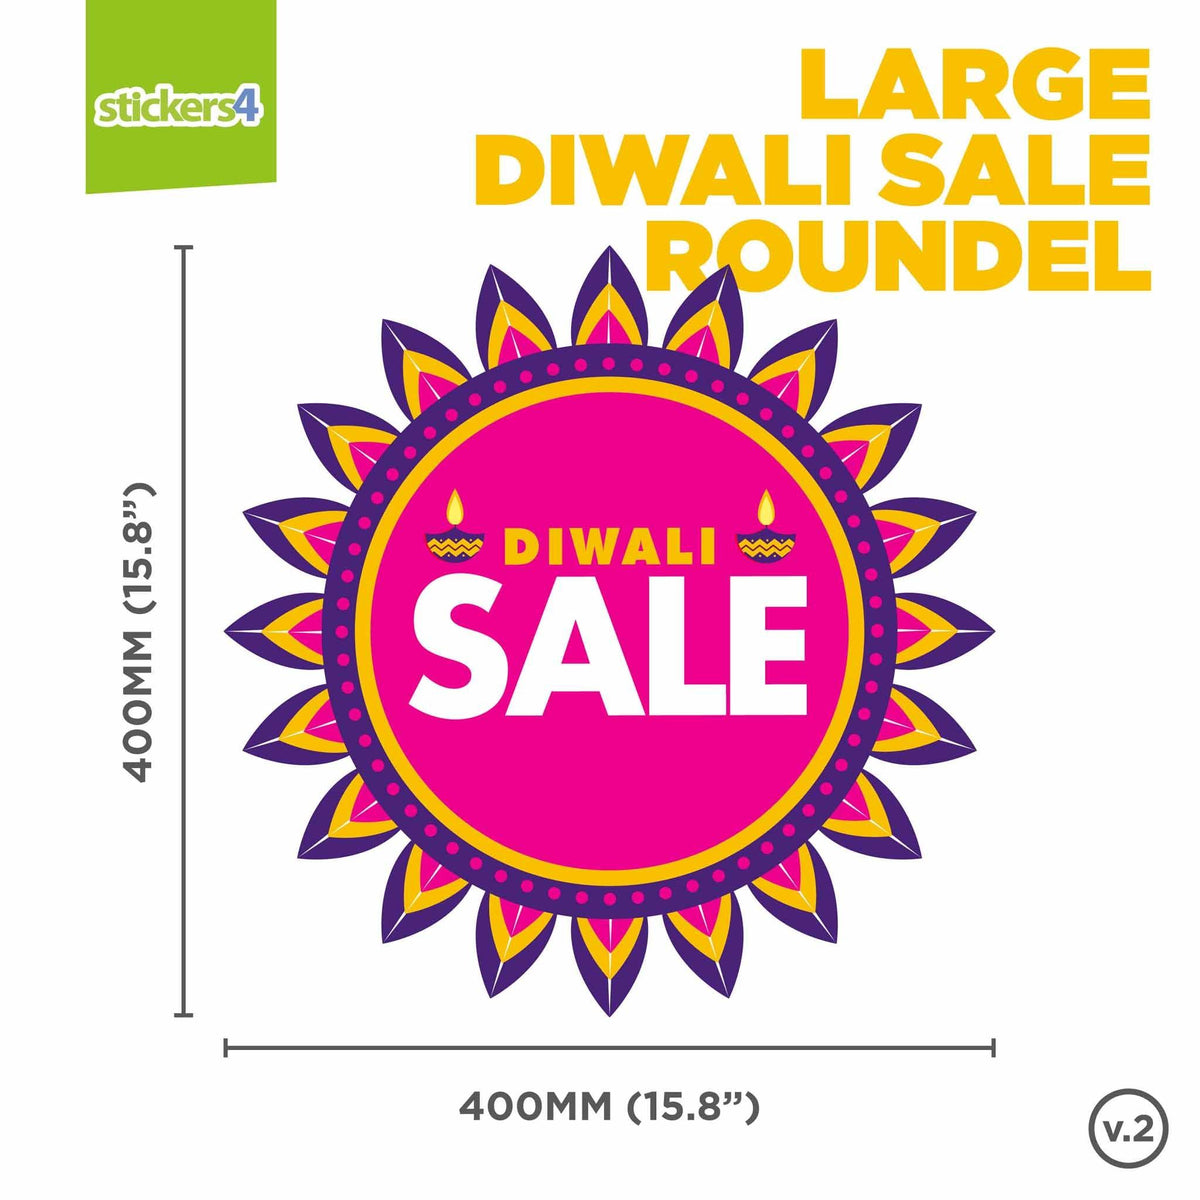 Diwali Sale Roundel Window Sticker Diwali Window Displays